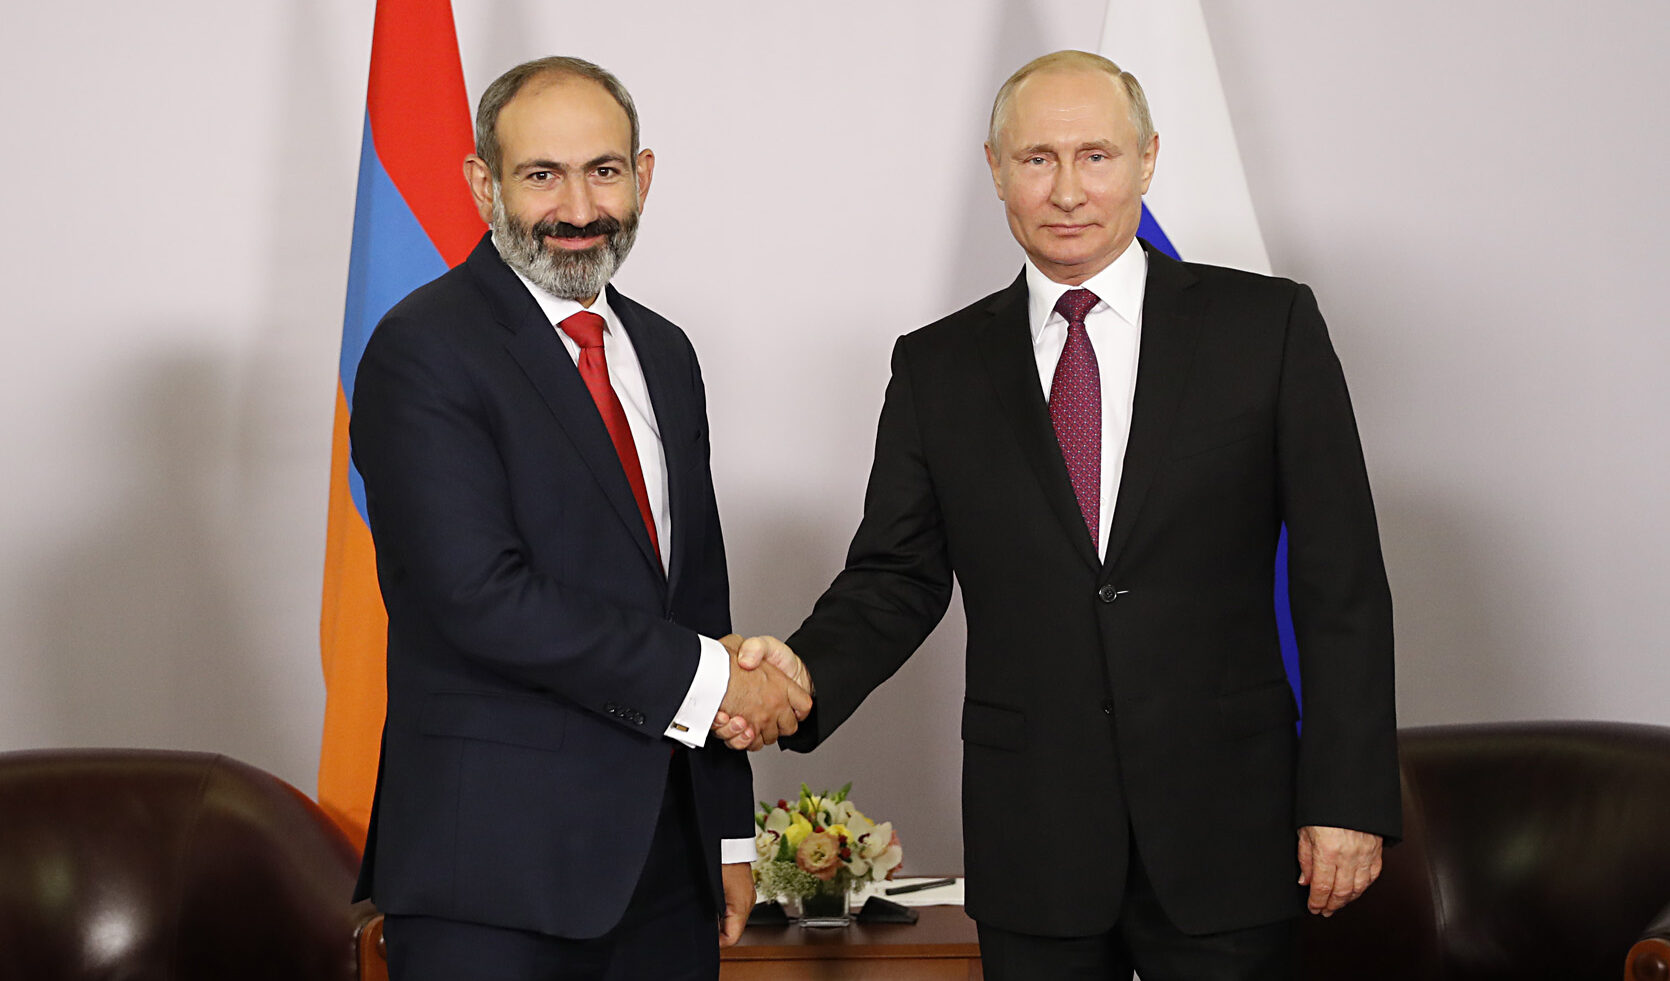 L'Armenia ora diffida della Russia: paura per il "patto caucasico" tra Putin e Erdogan